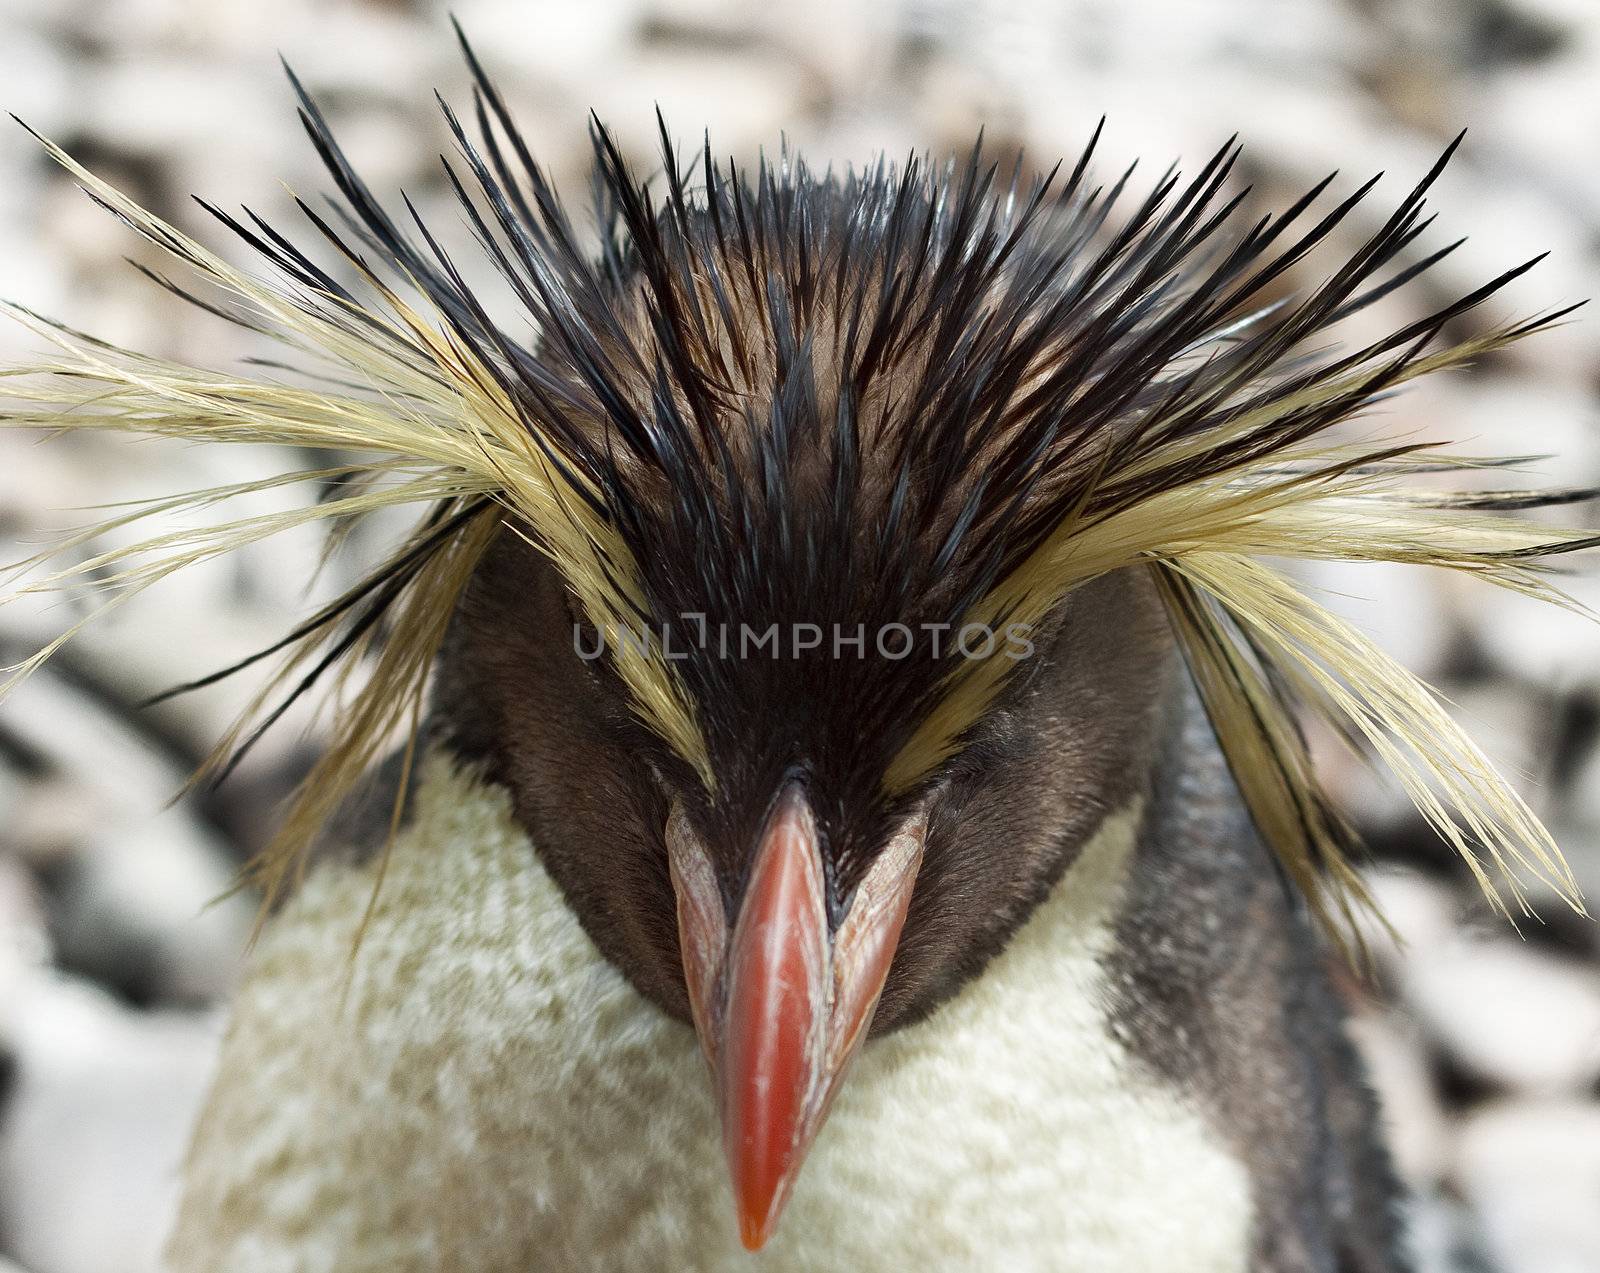 Rockhopper penguin by annems